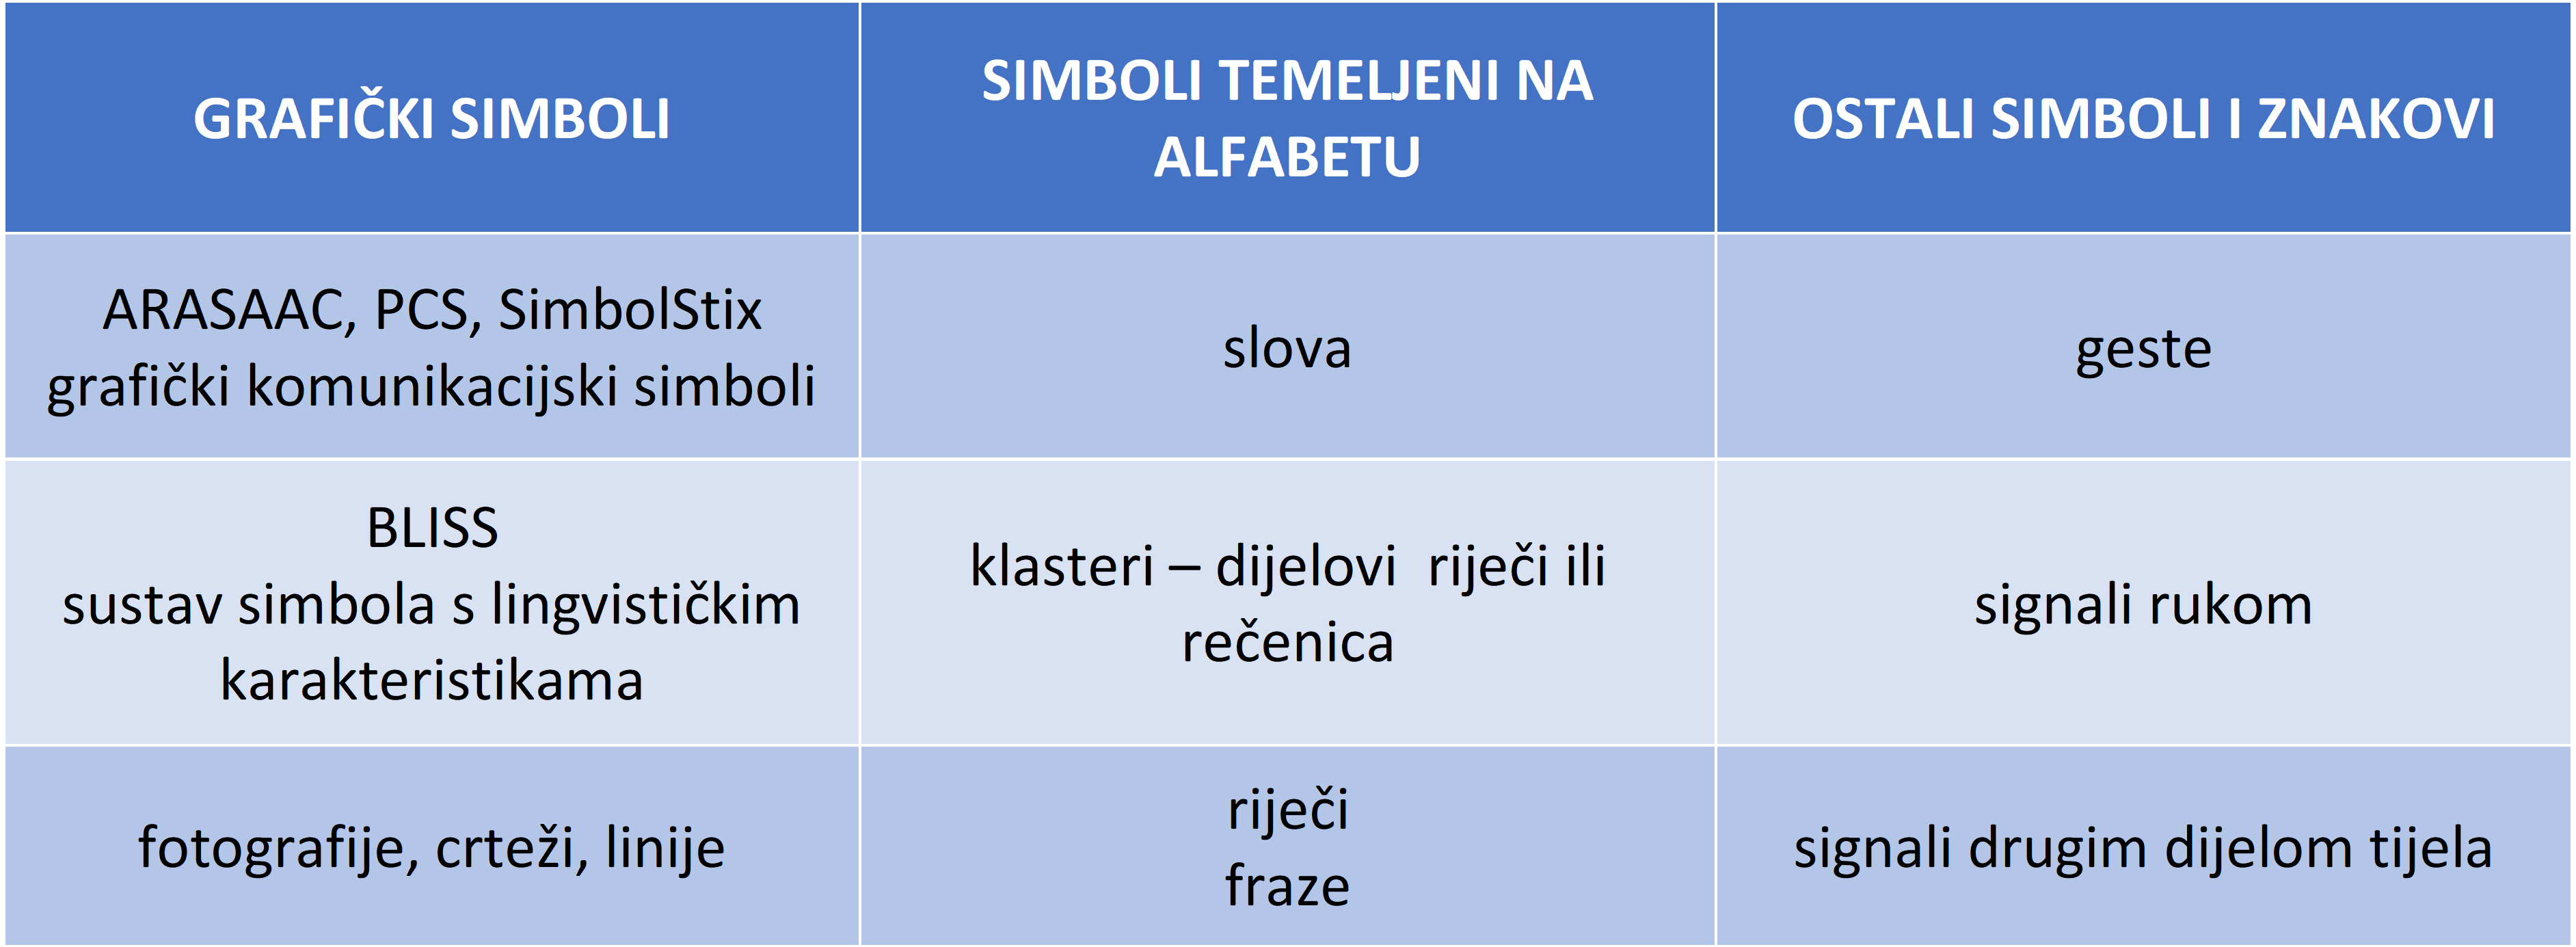 Slika 2. Primjeri simbola i znakova u funkciji ekspresivne komunikacije